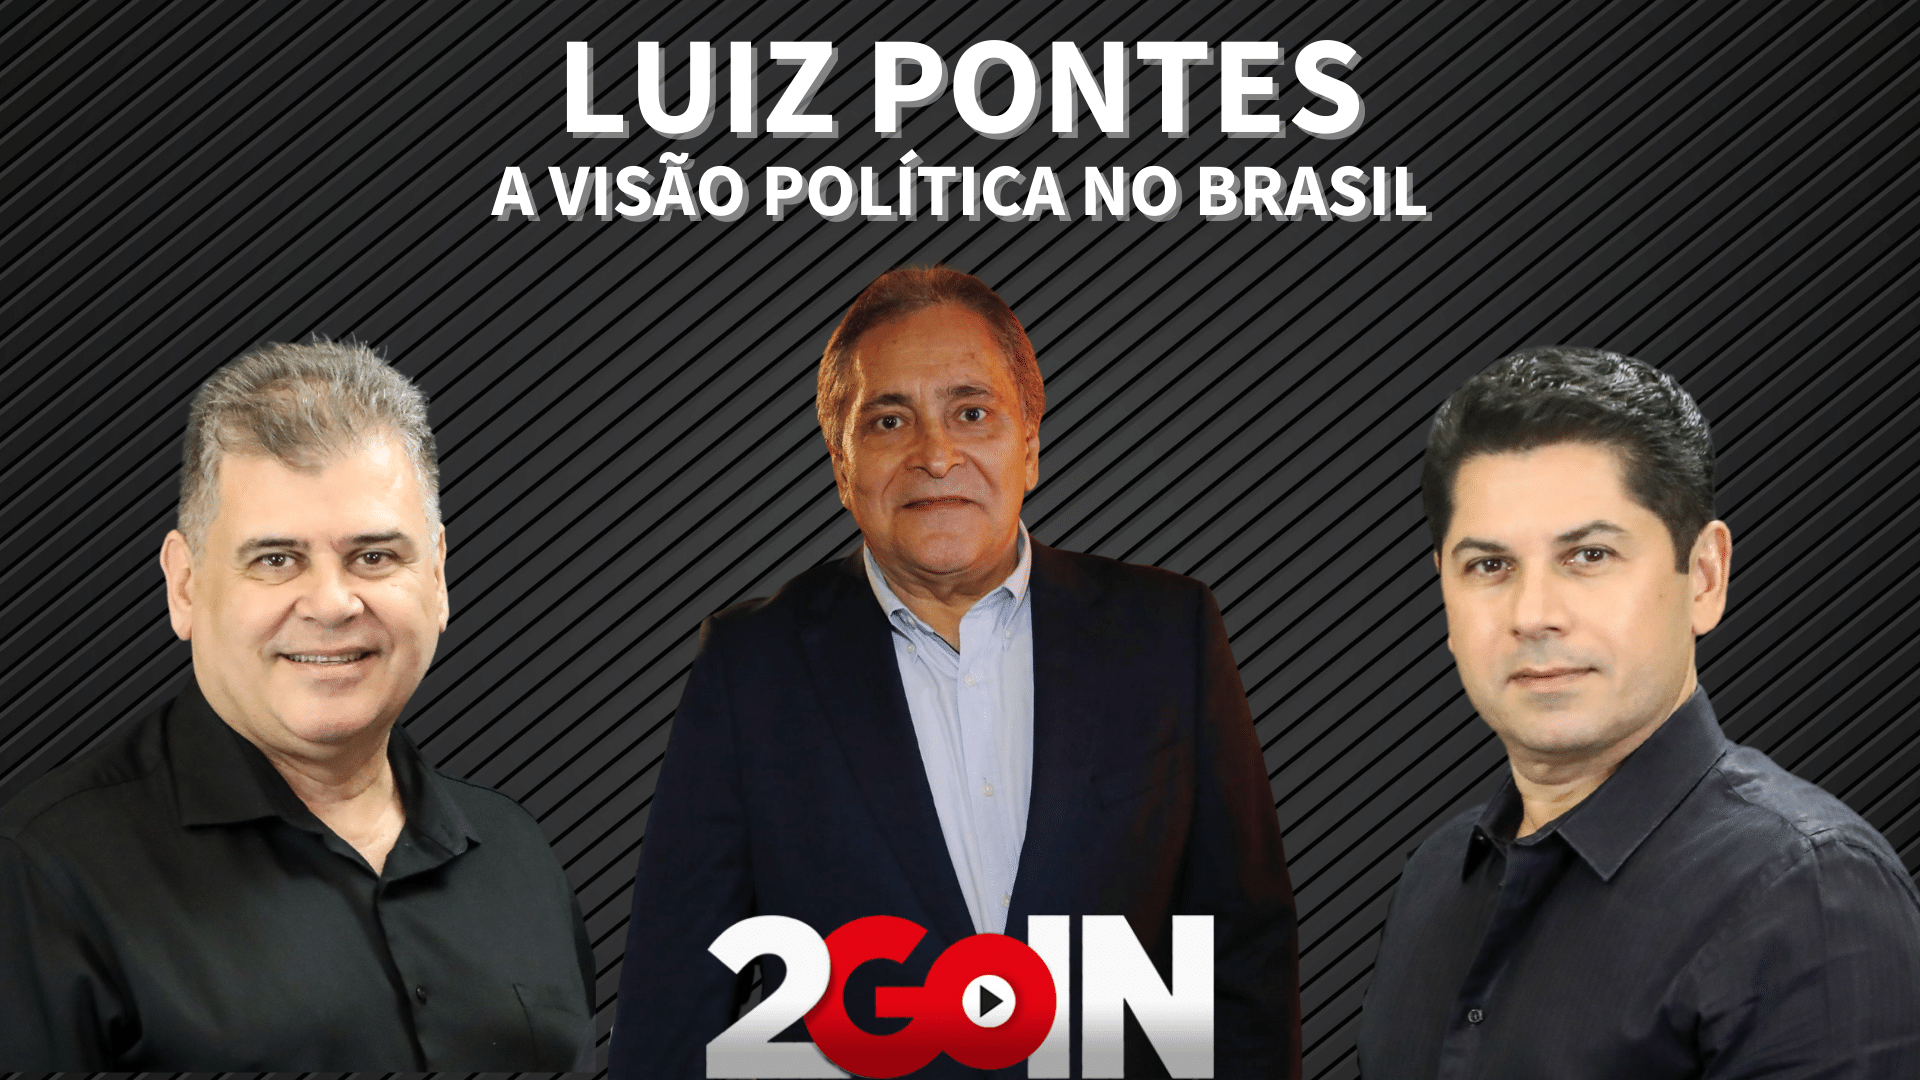 Luiz Pontes | A Visão Política no Brasil